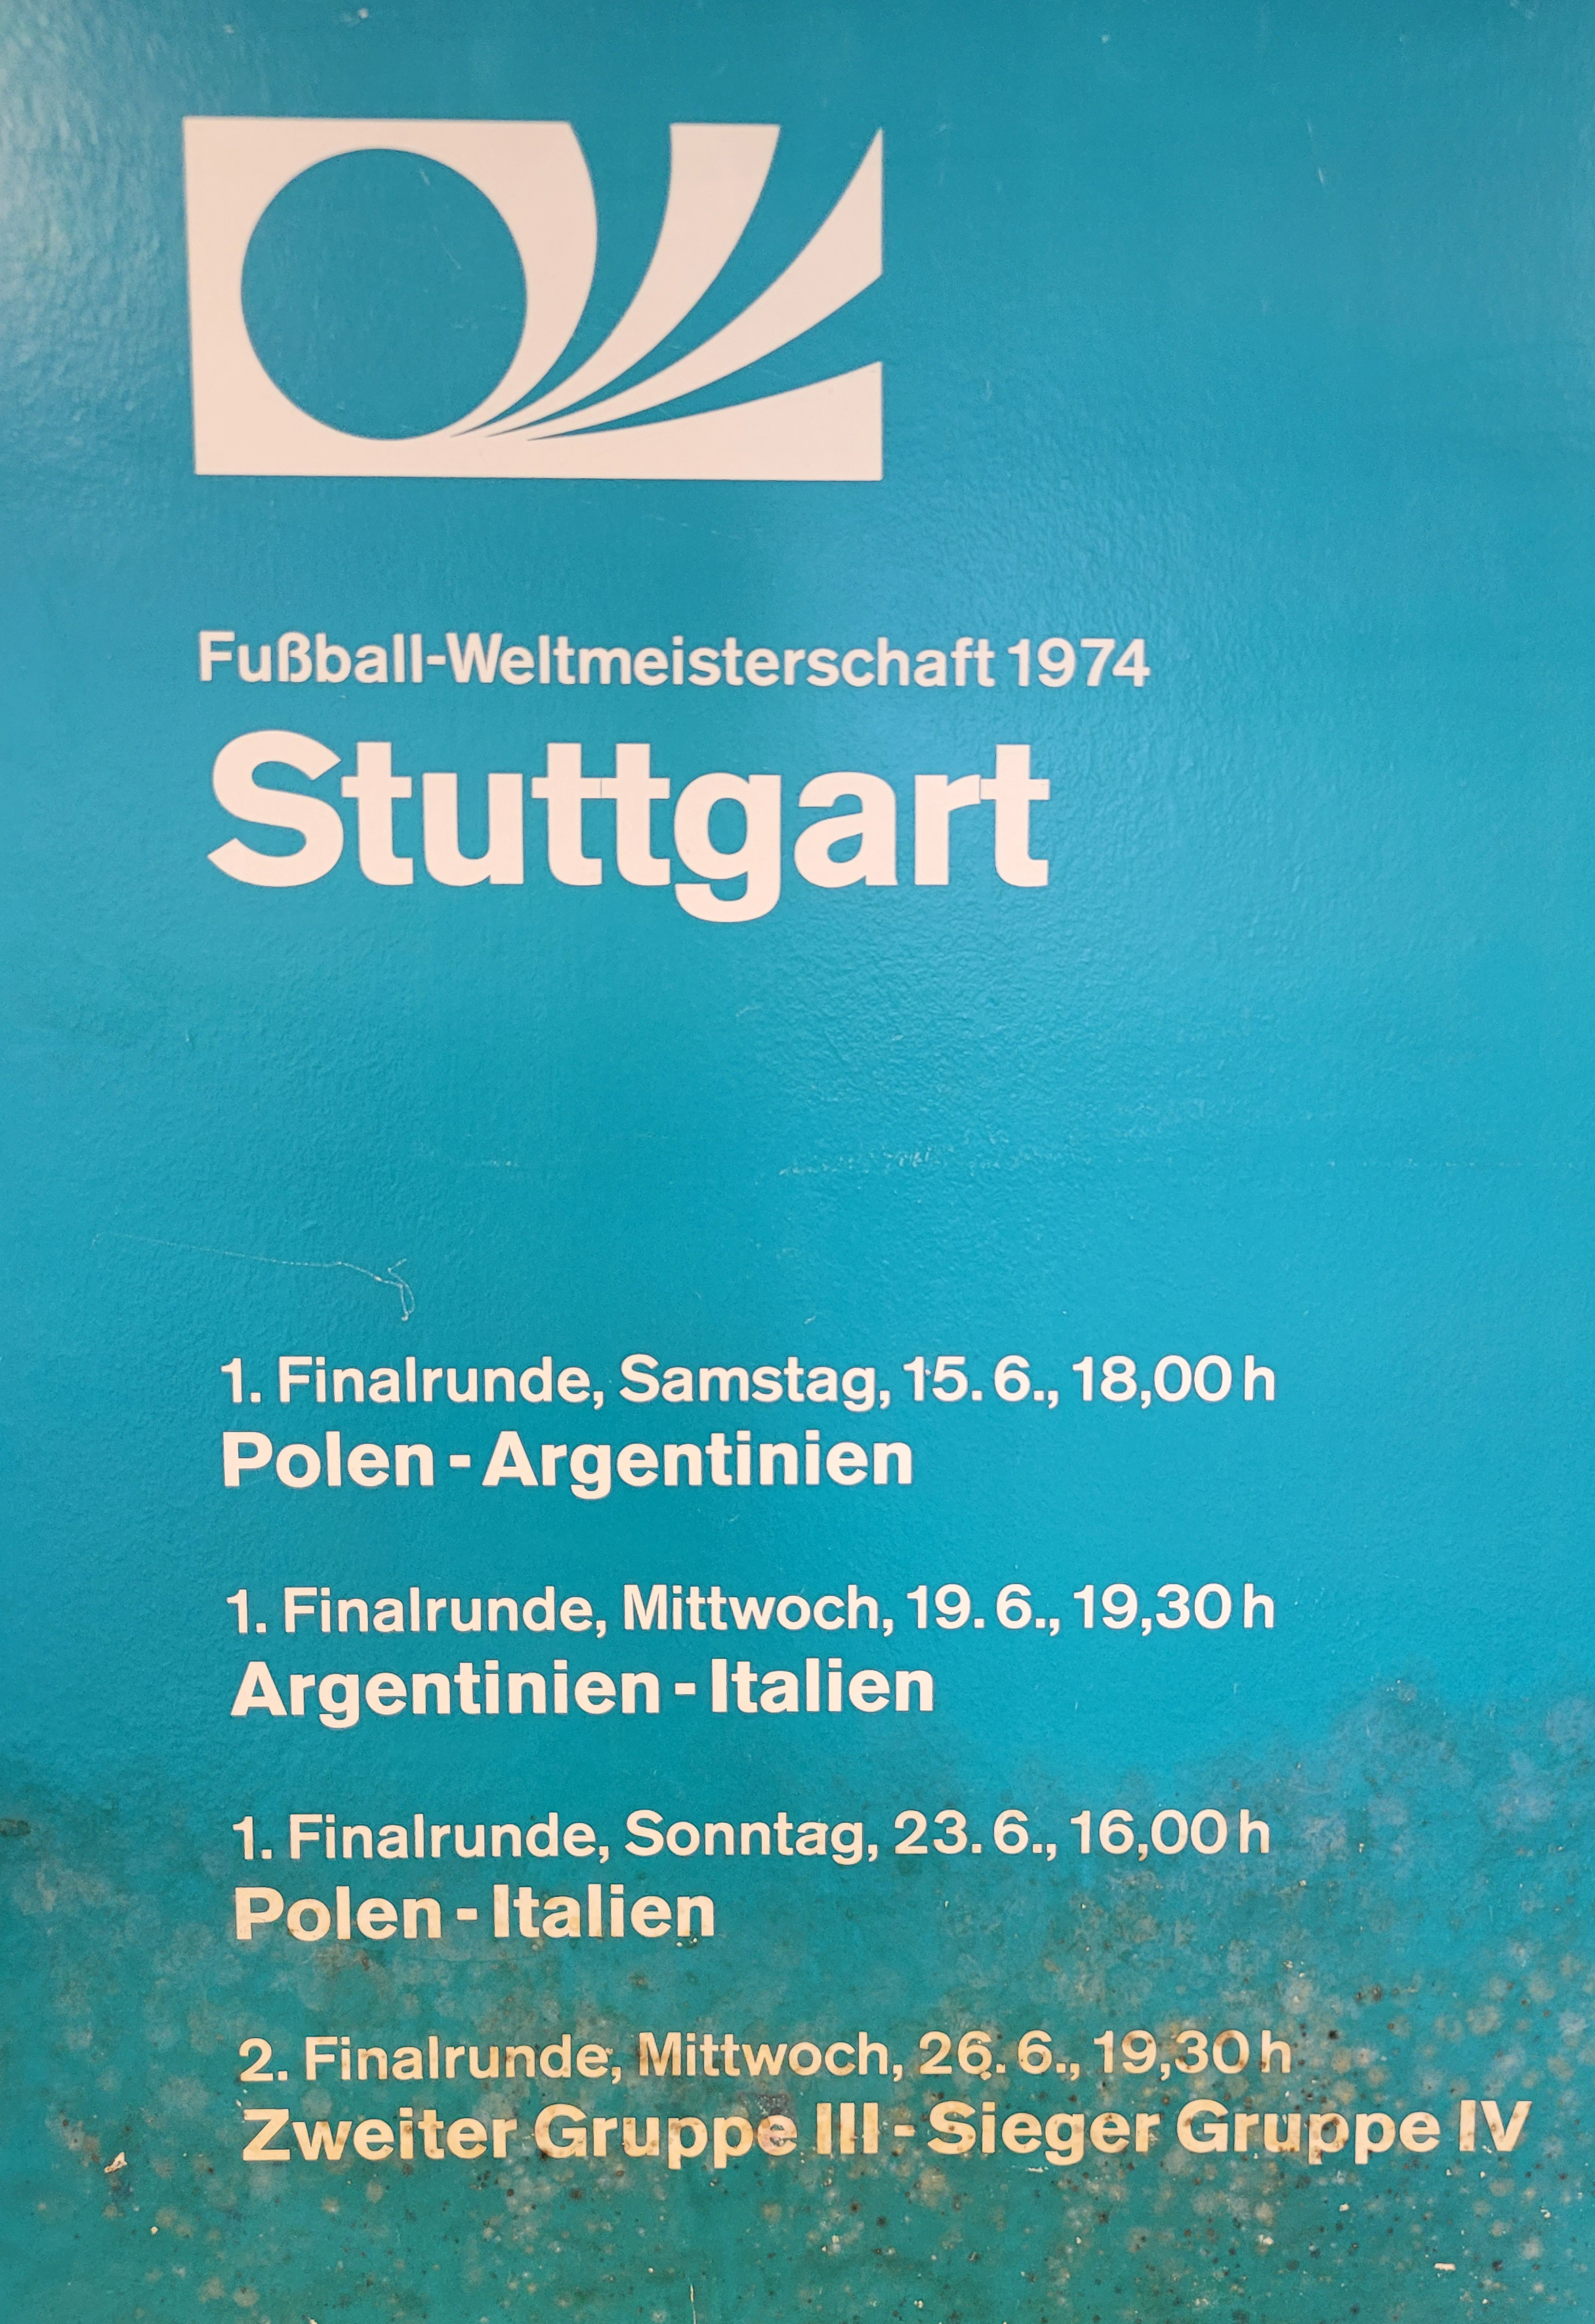 Spielankündigungsplakat der WM 1974 für den Spielort Stuttgart.